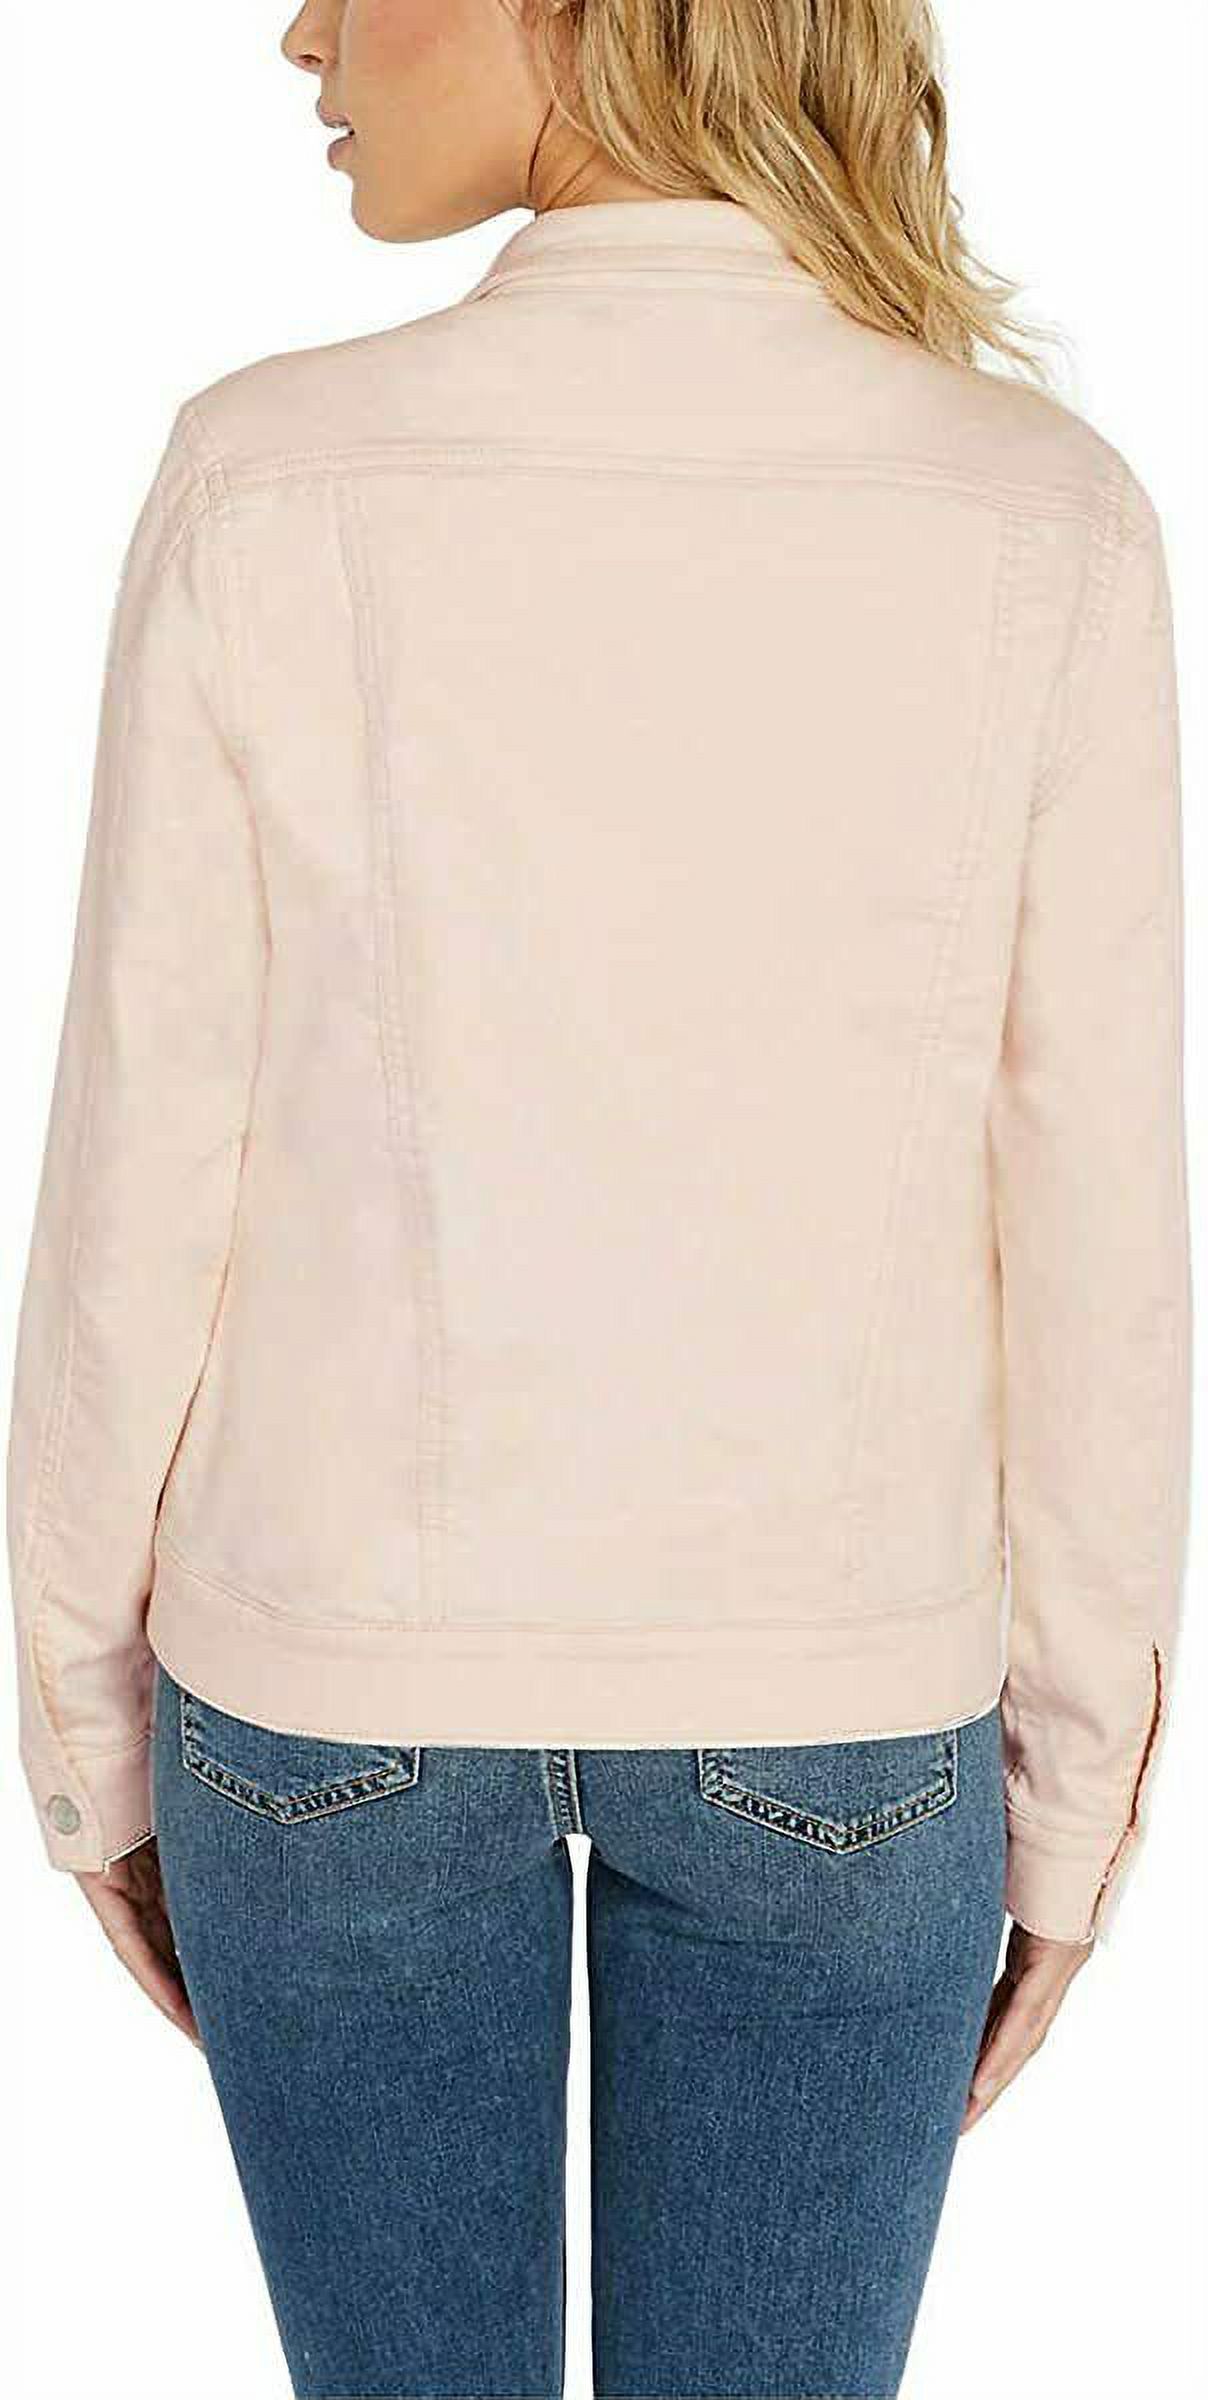 Buffalo David Bitton Womens Knit Denim Jacket (Light Pink, X-Large) - image 3 of 7